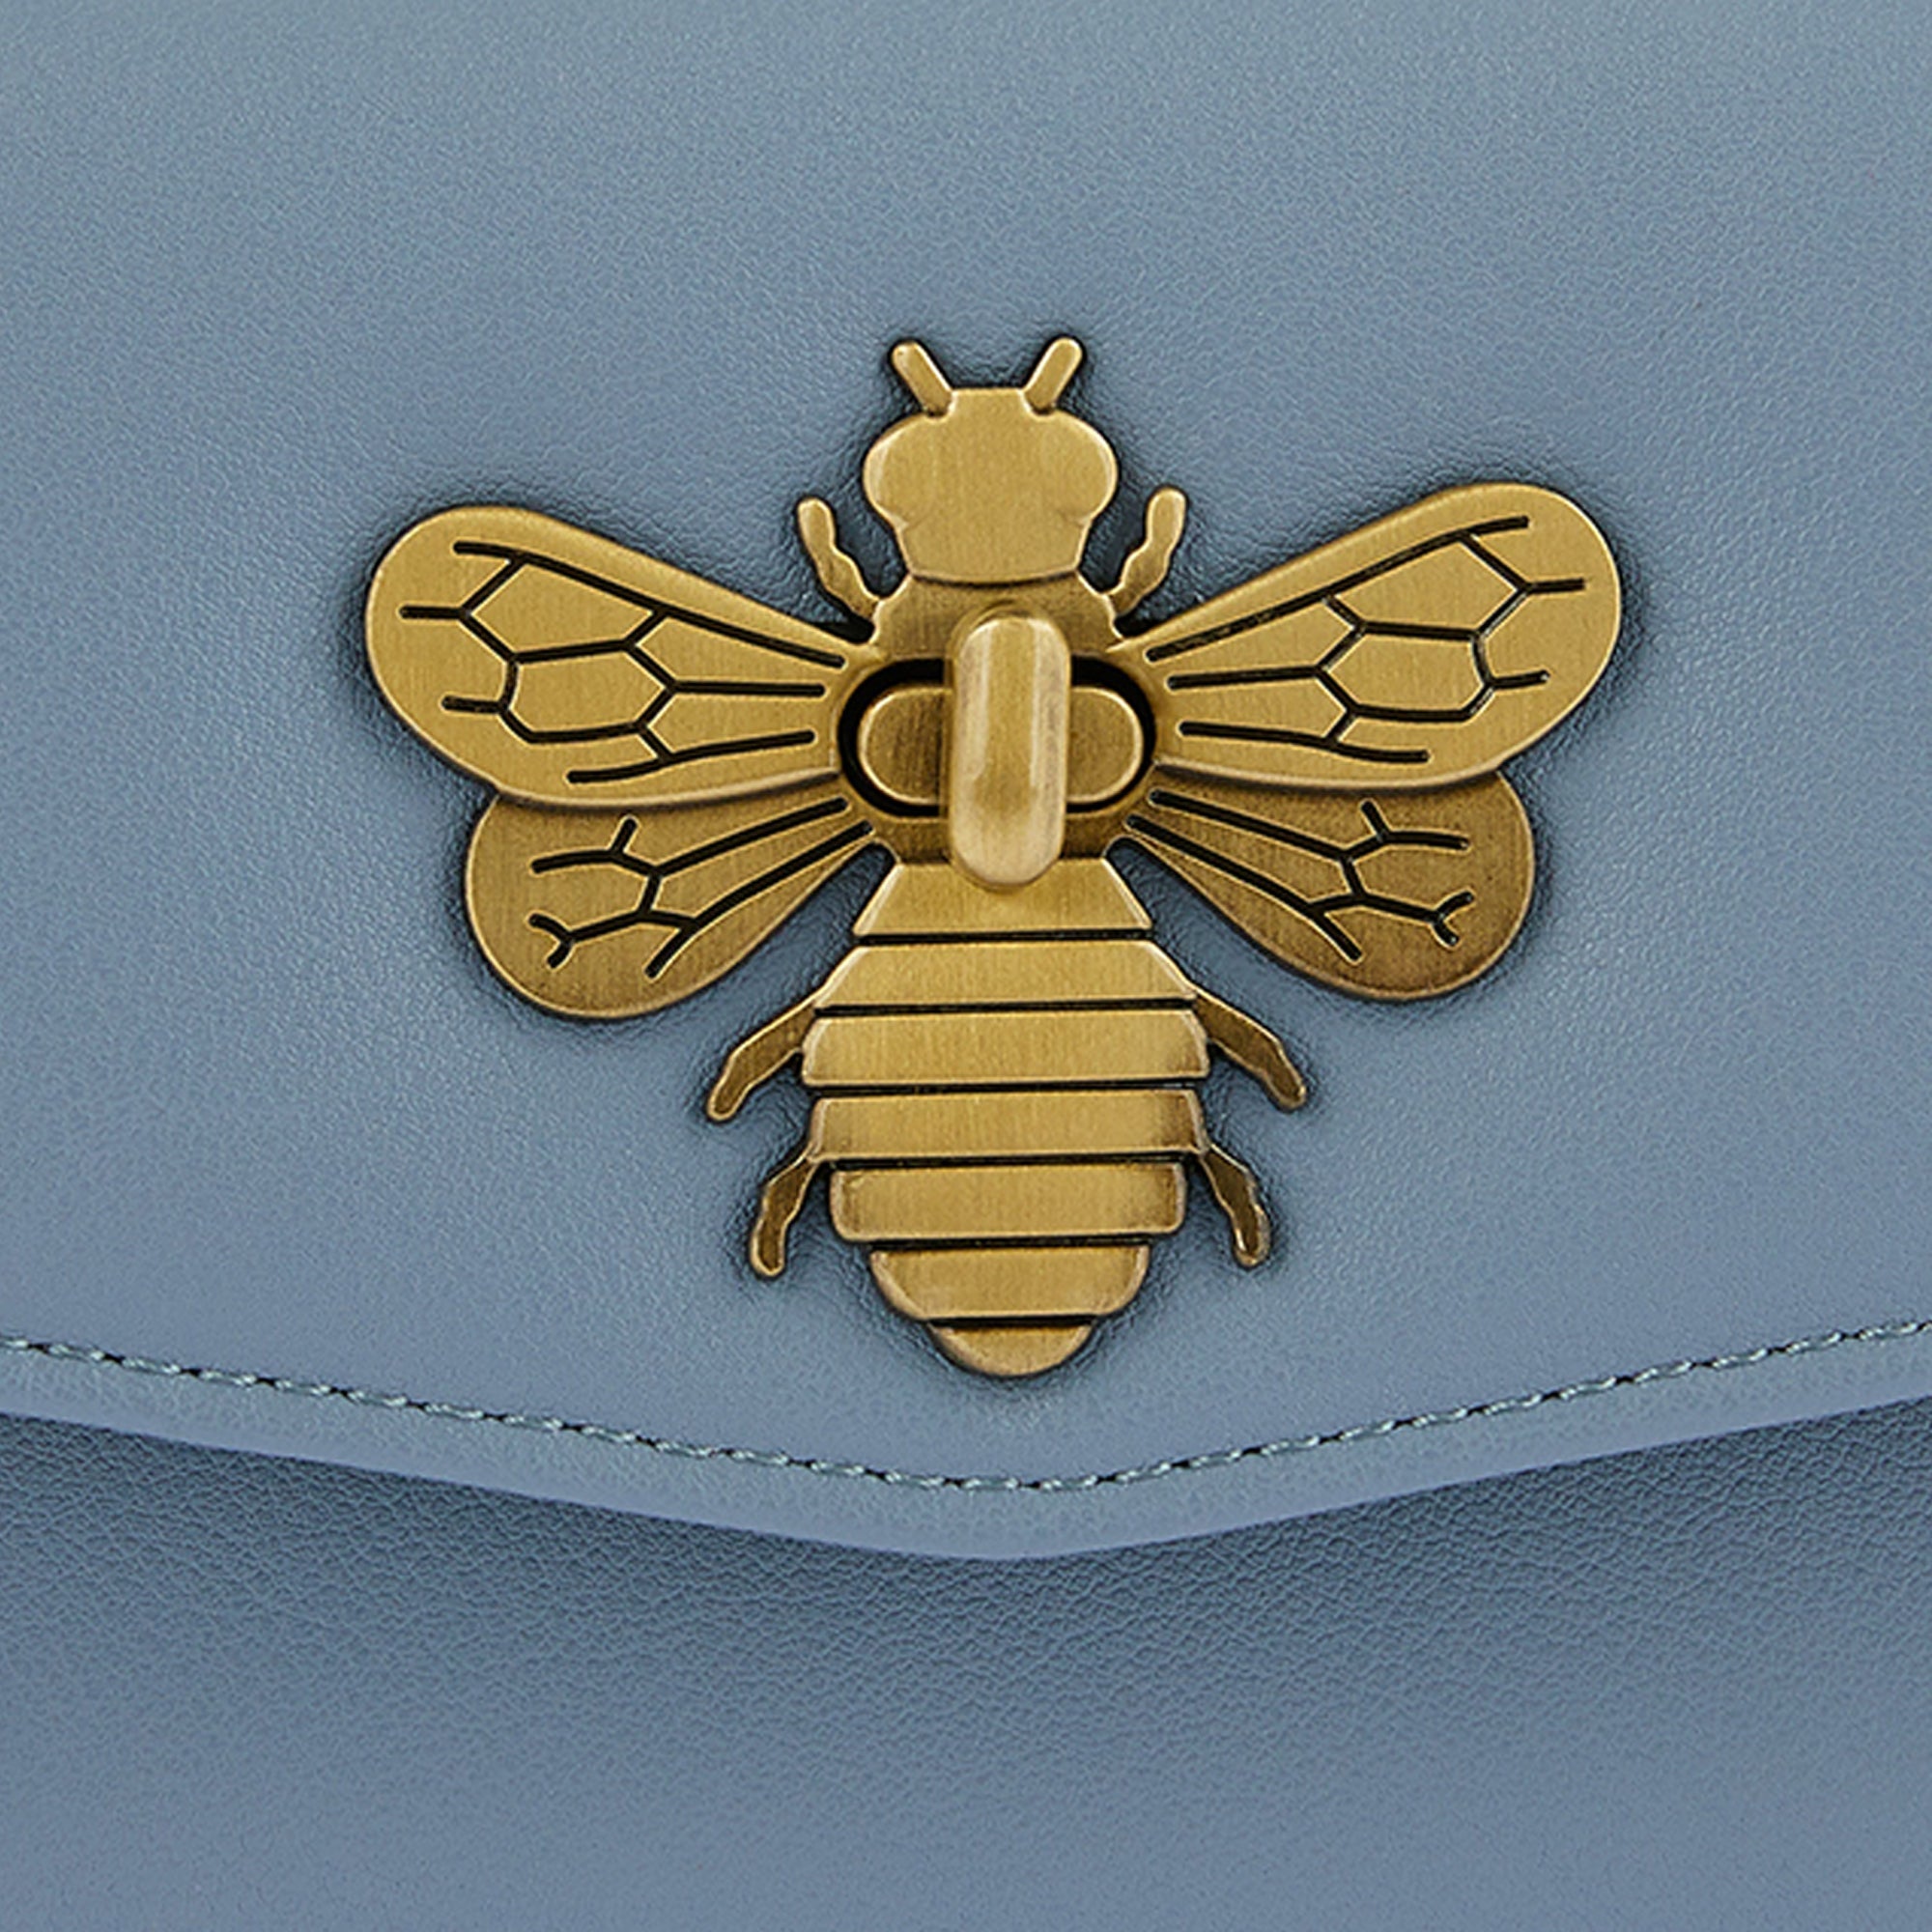 Accessorize London Women's Faux Leather Britney Bee Wallet - Blue